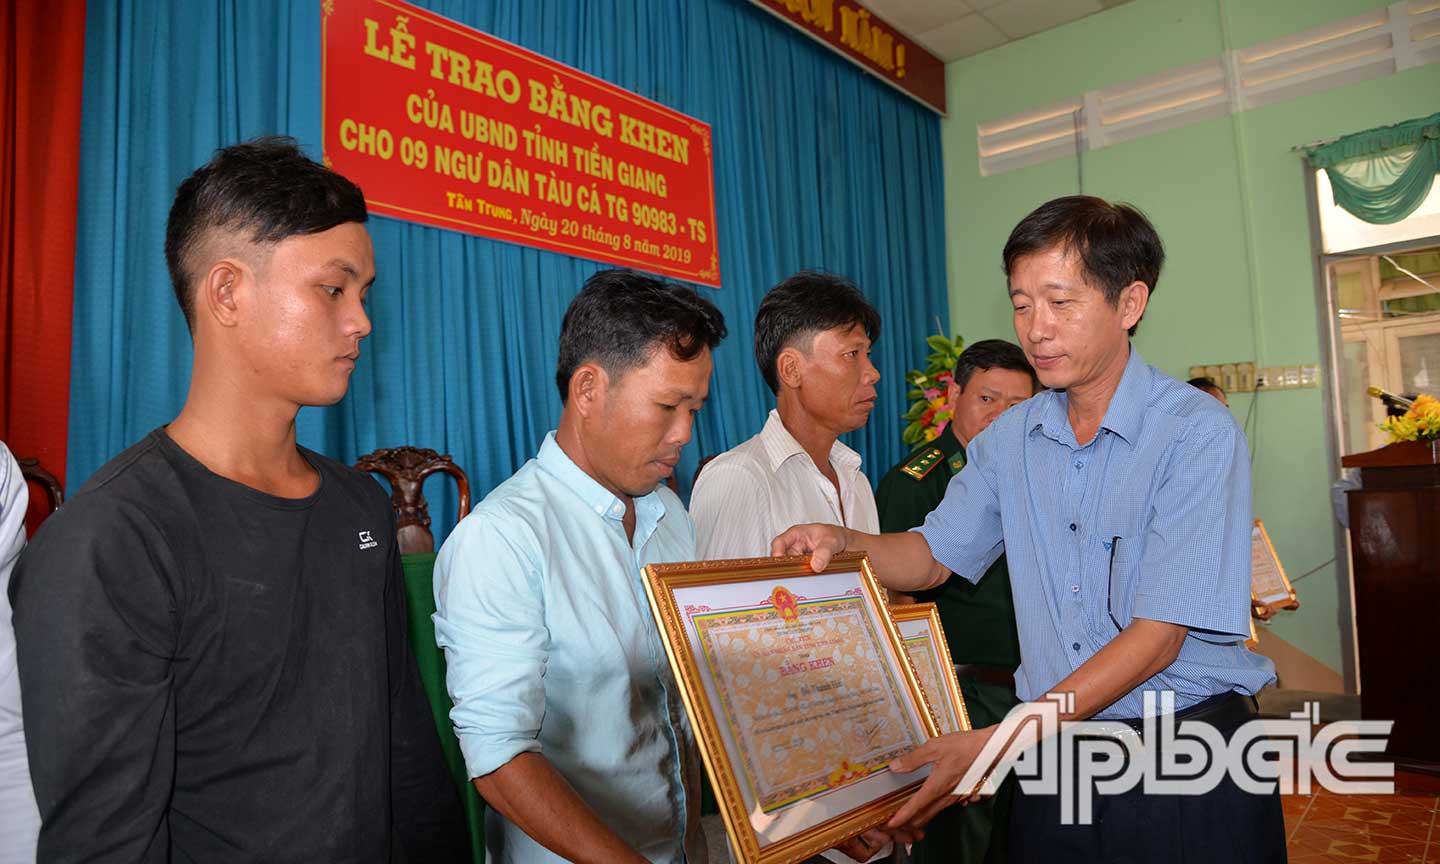 Đồng chí Trịnh Công Minh trao Bằng khen của UBND tỉnh cho thuyền trưởng và các ngư dân.